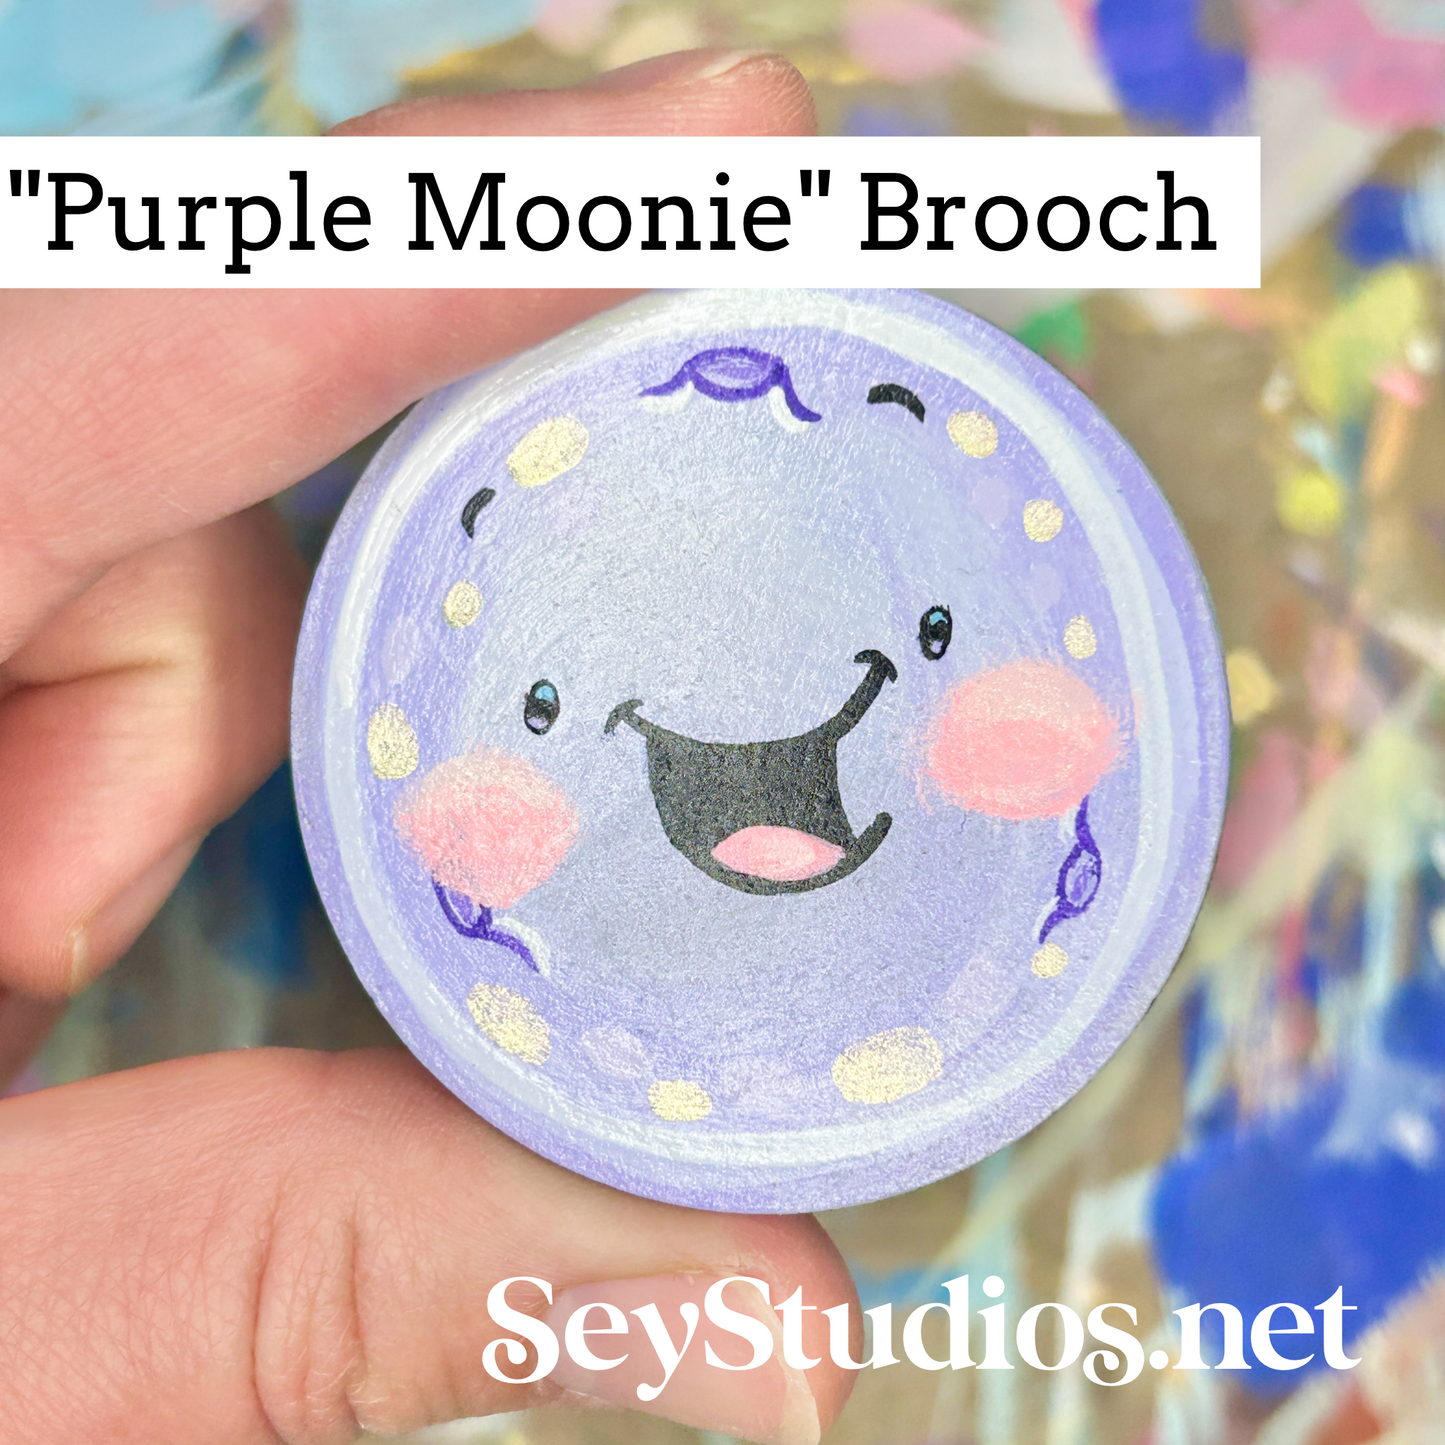 Brooch - "Purple Moonie"